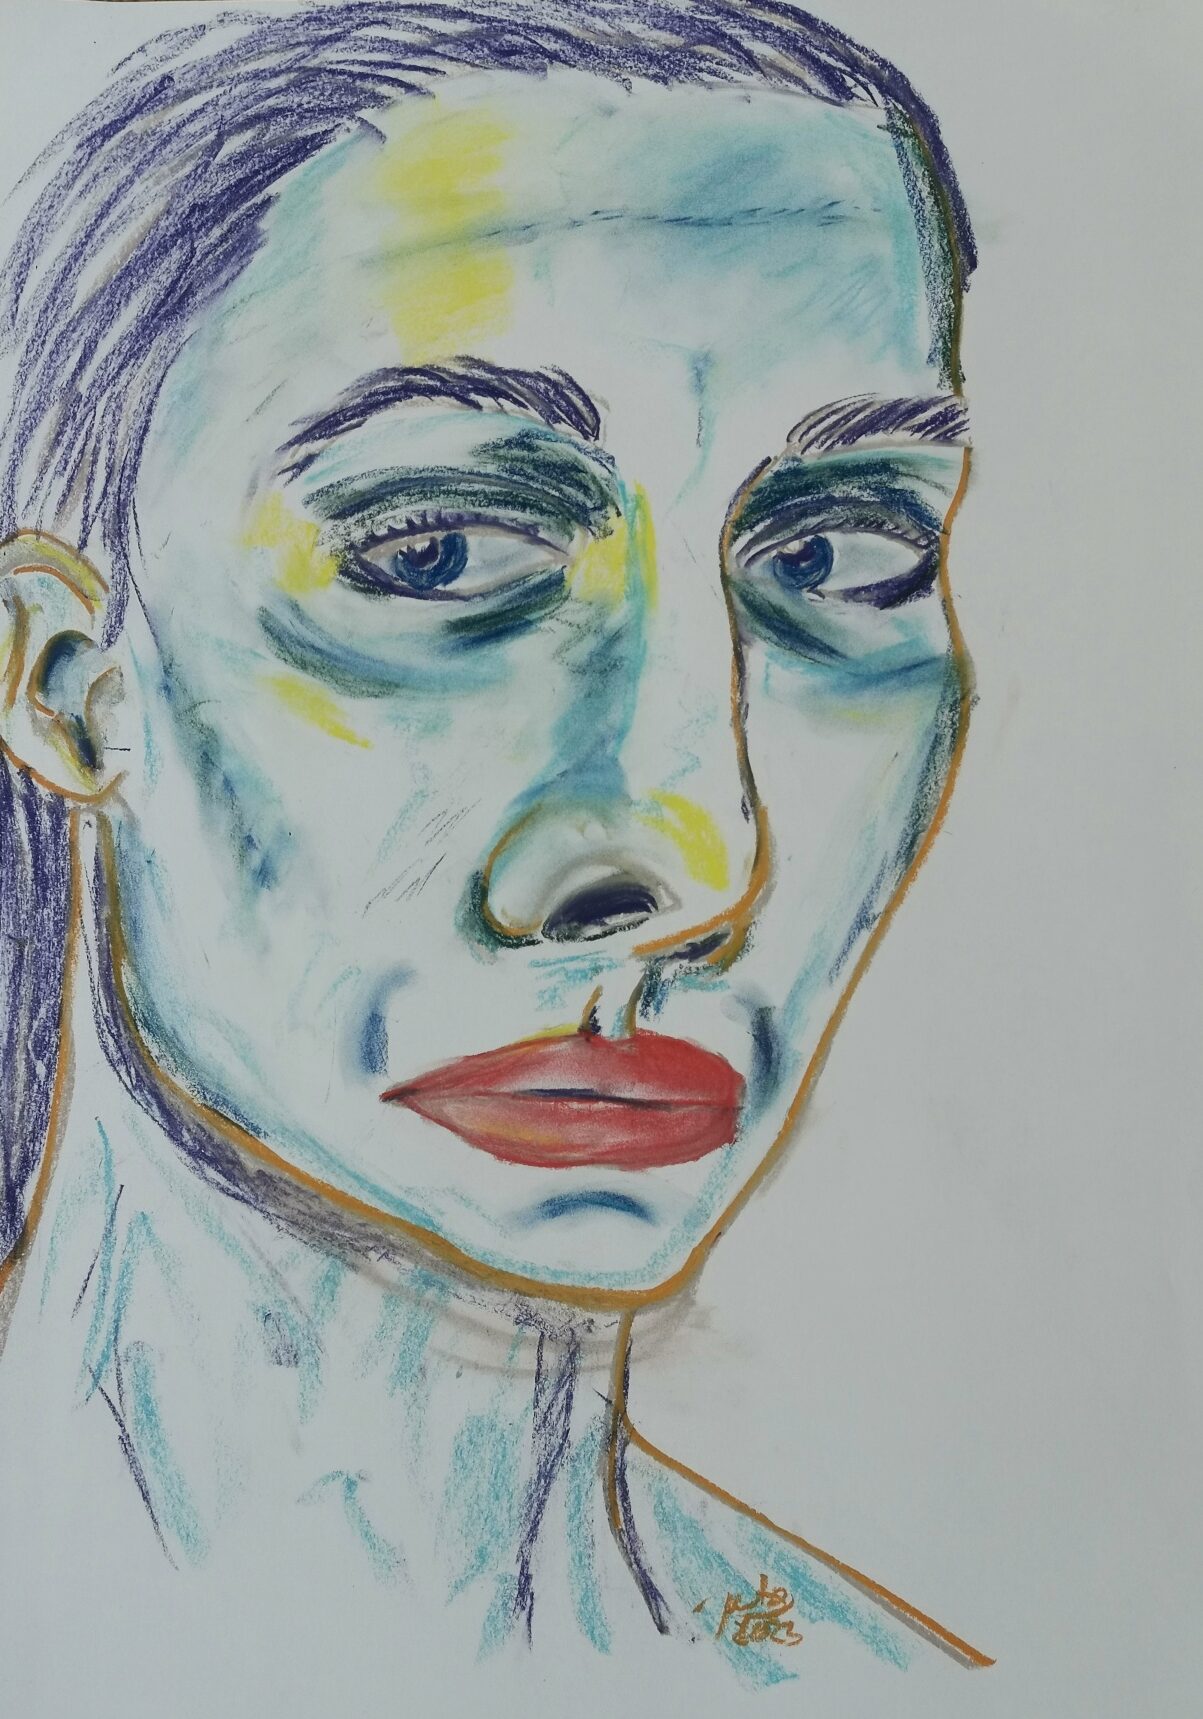 Zeichnung eines leicht seitlich geneigten Frauenkopfes mit Betonung auf Augen und Nase - in blau, türkis gehalten